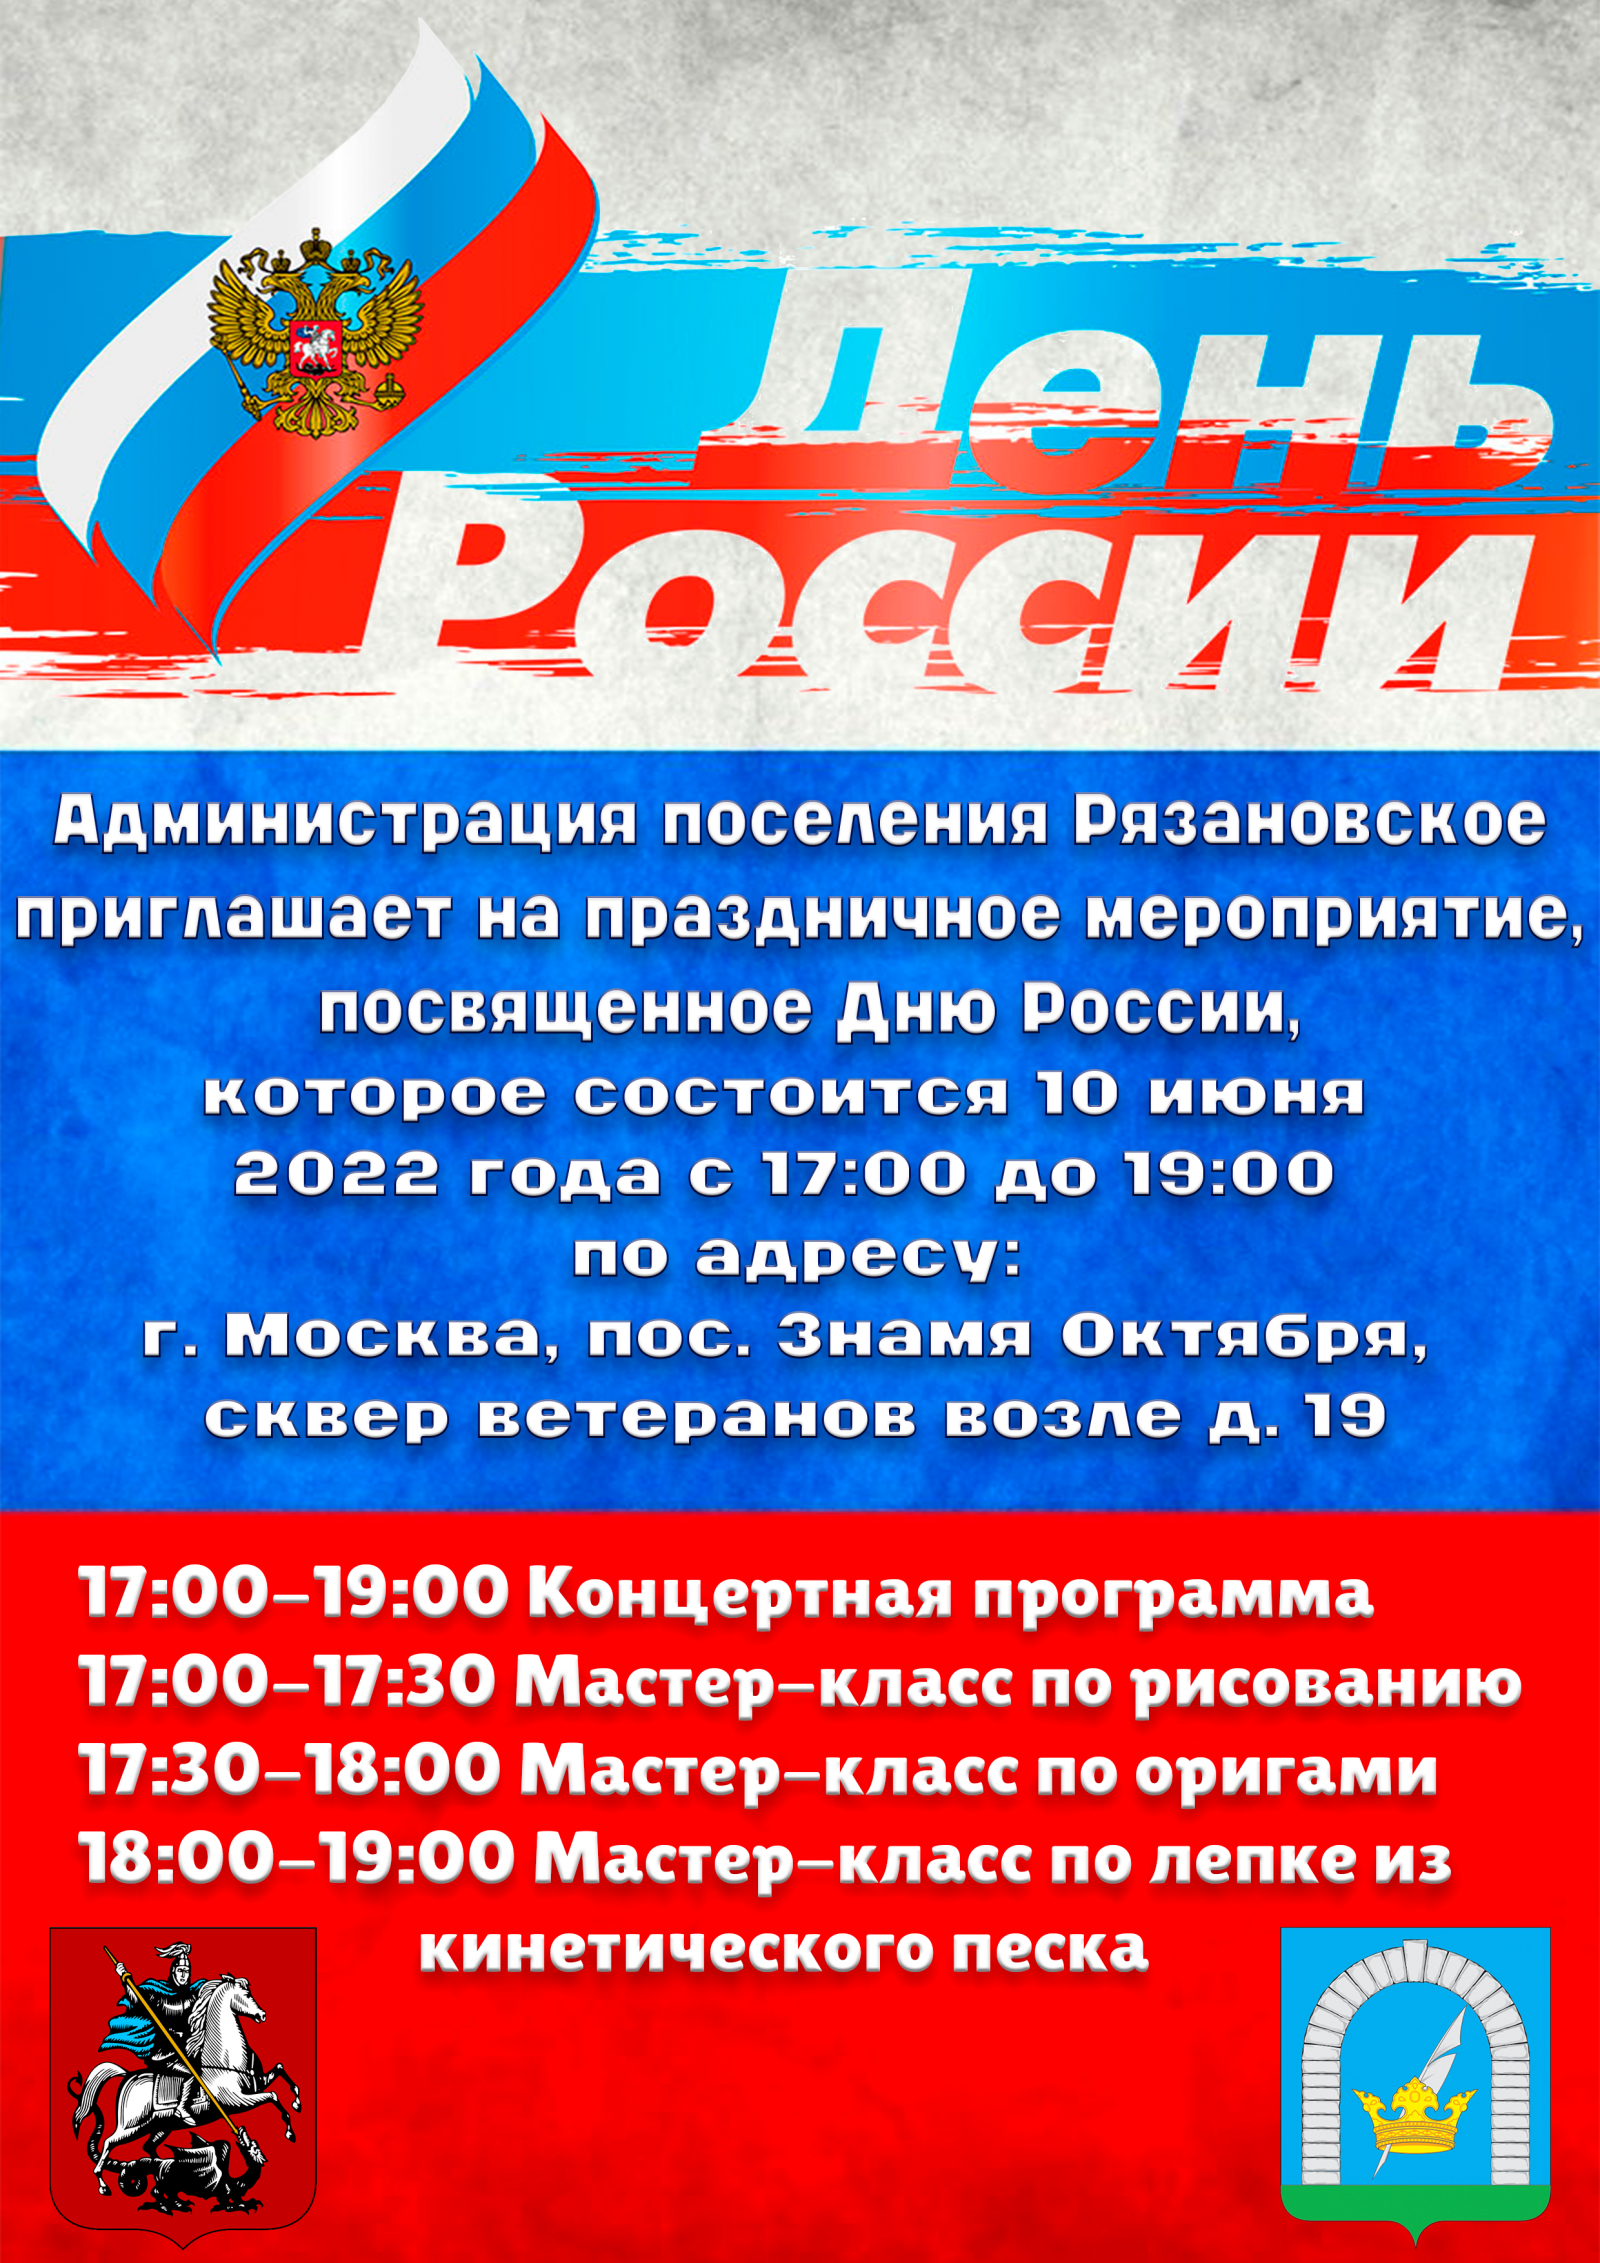 Администрация поселения приглашает на праздничное мероприятие посвященное Дню России